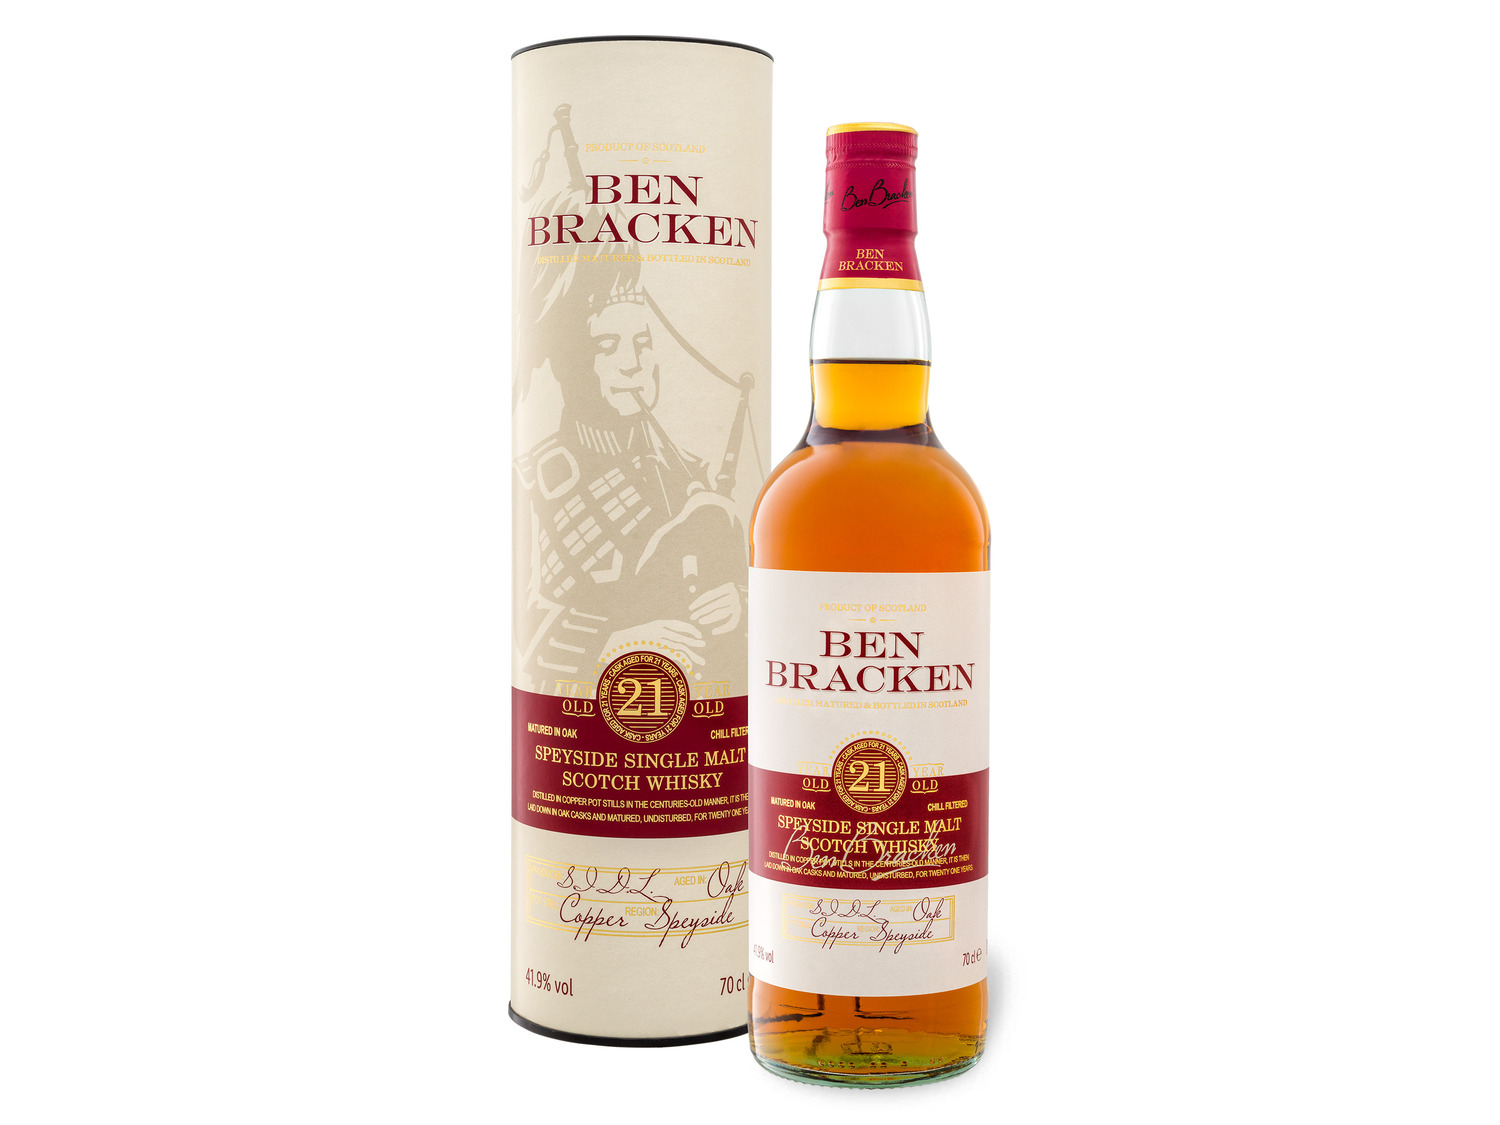 Ben Bracken Speyside Single Malt Scotch Whisky 21 Jahr…